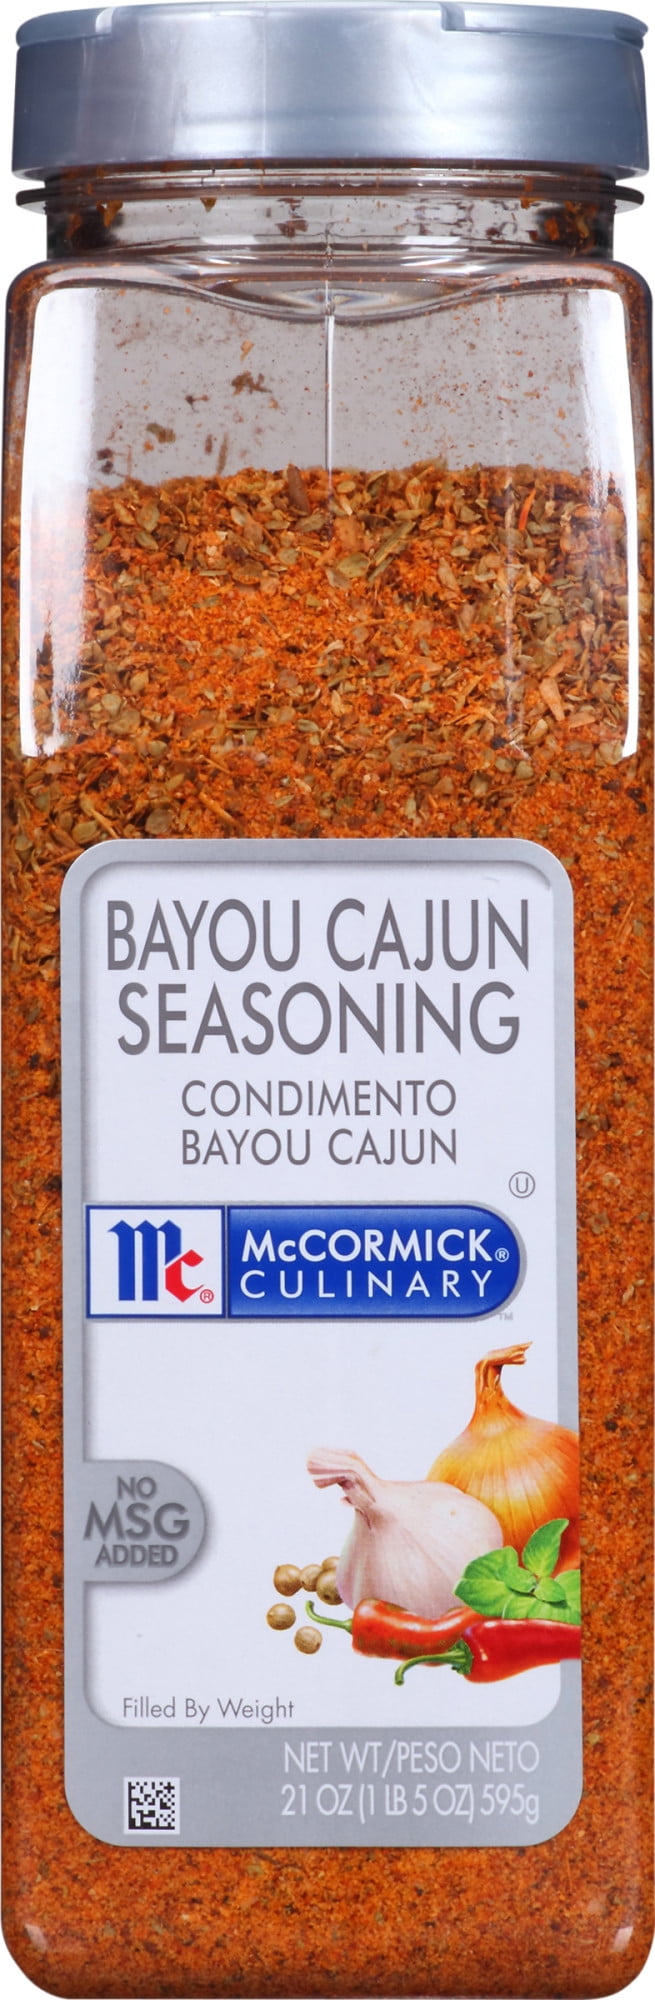 McCormick Culinary 6.5 lb. Cajun Seasoning